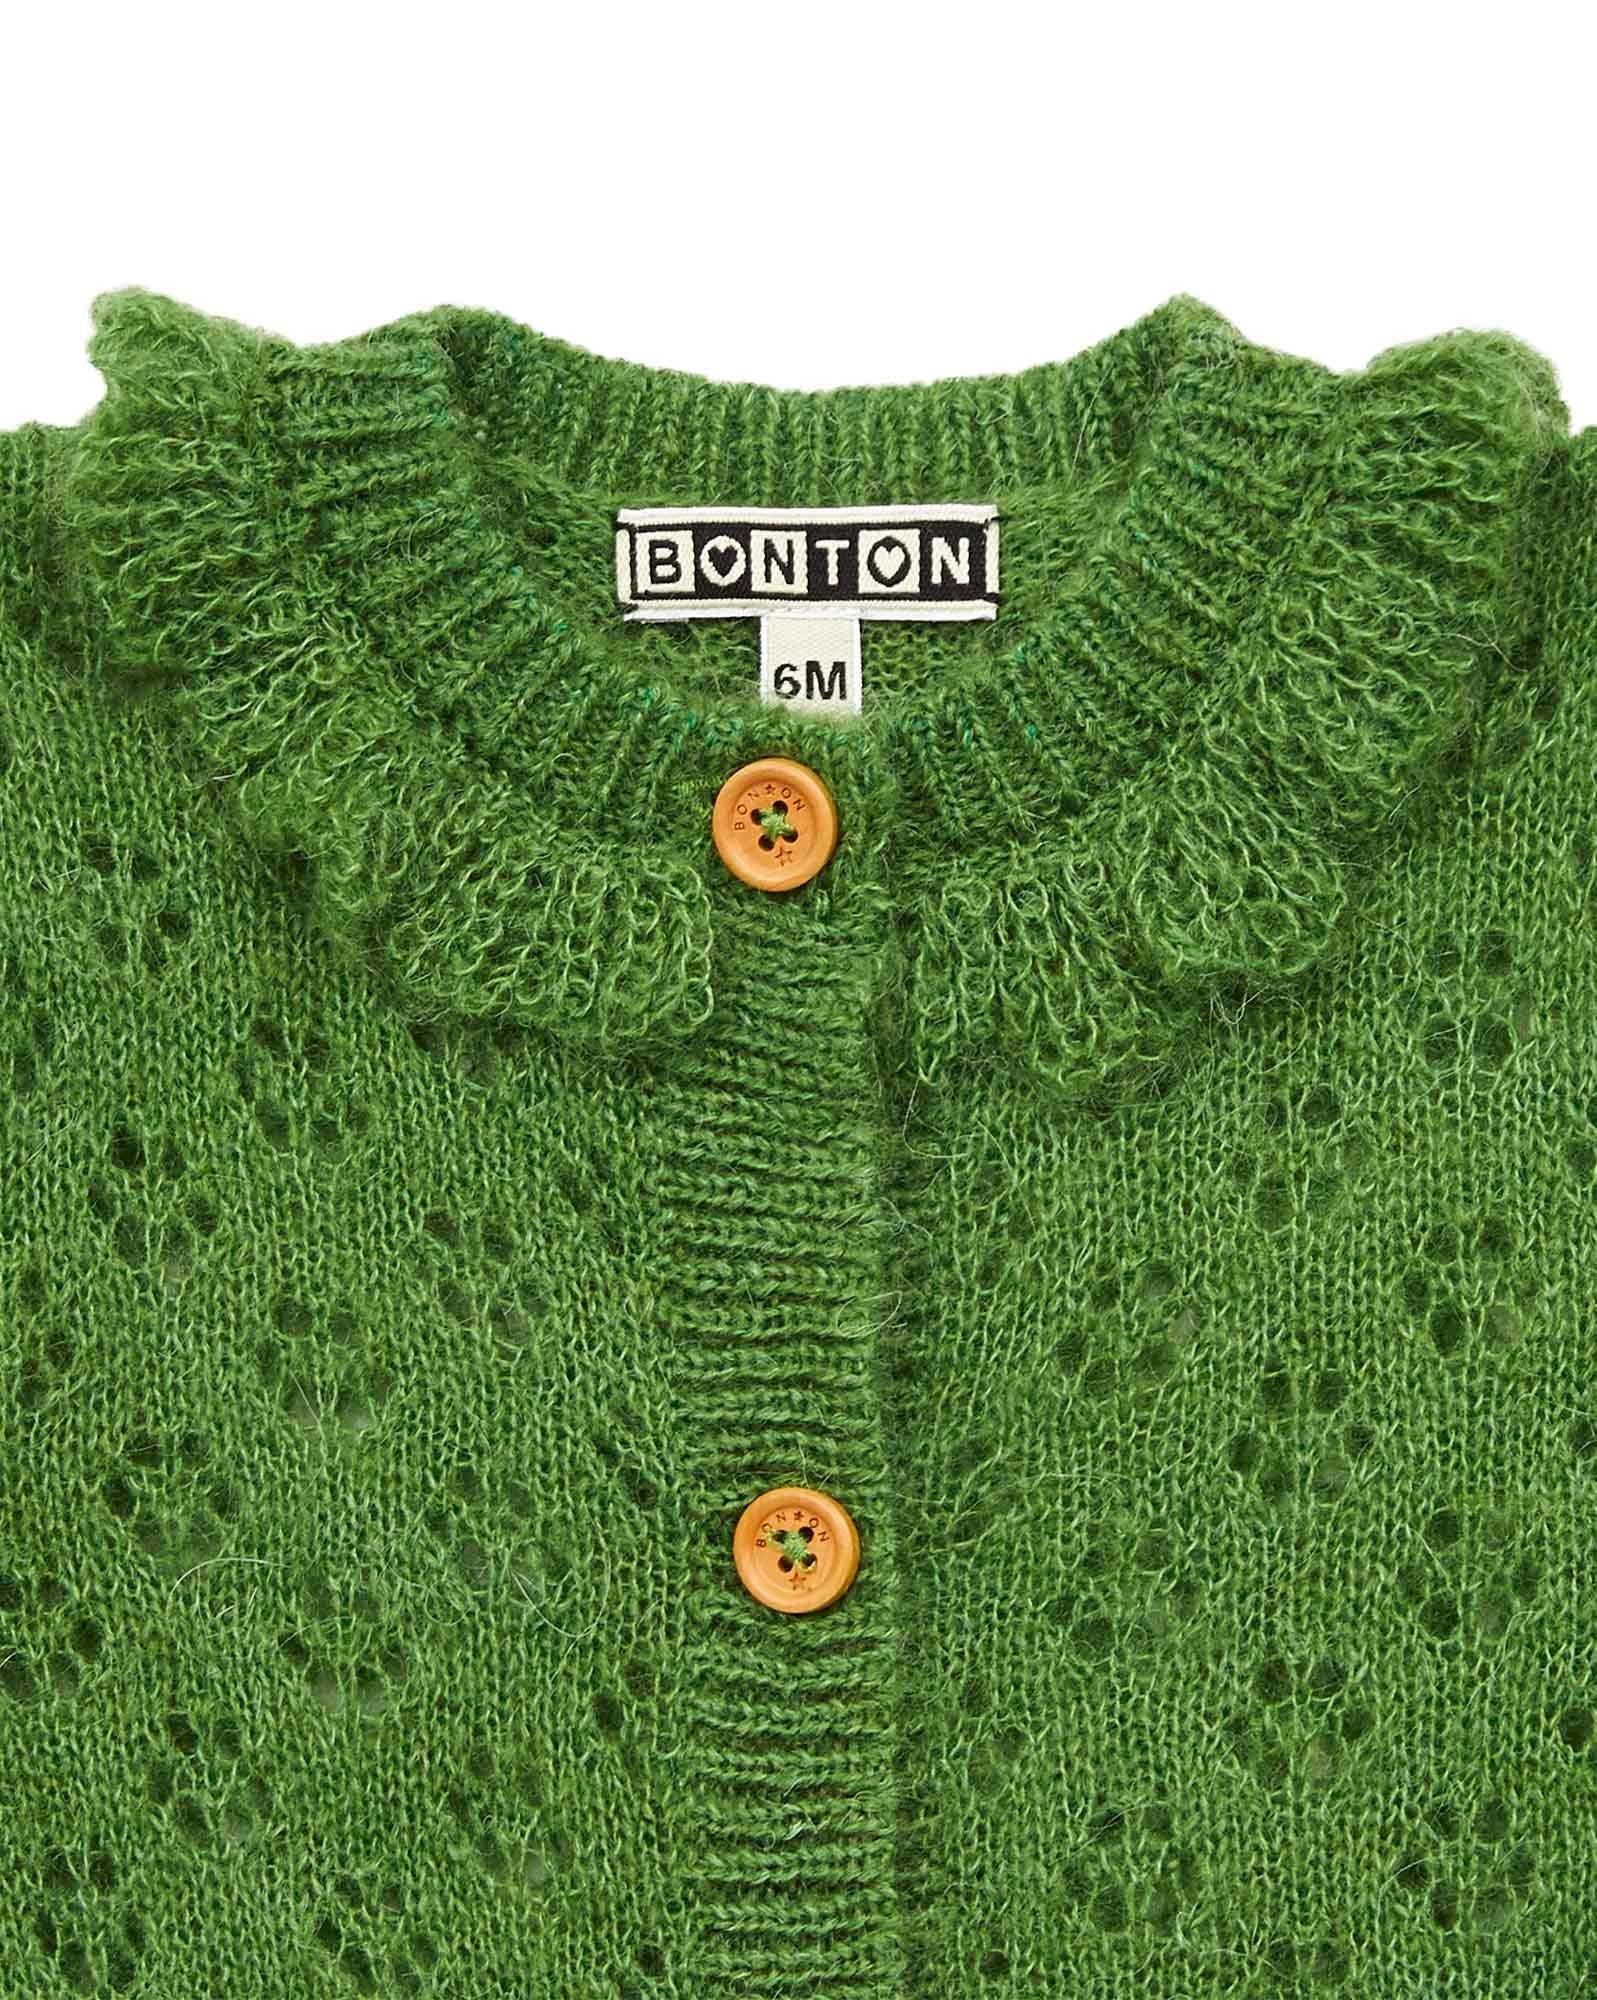 Cardigan Corolle vert Bébé en tricot